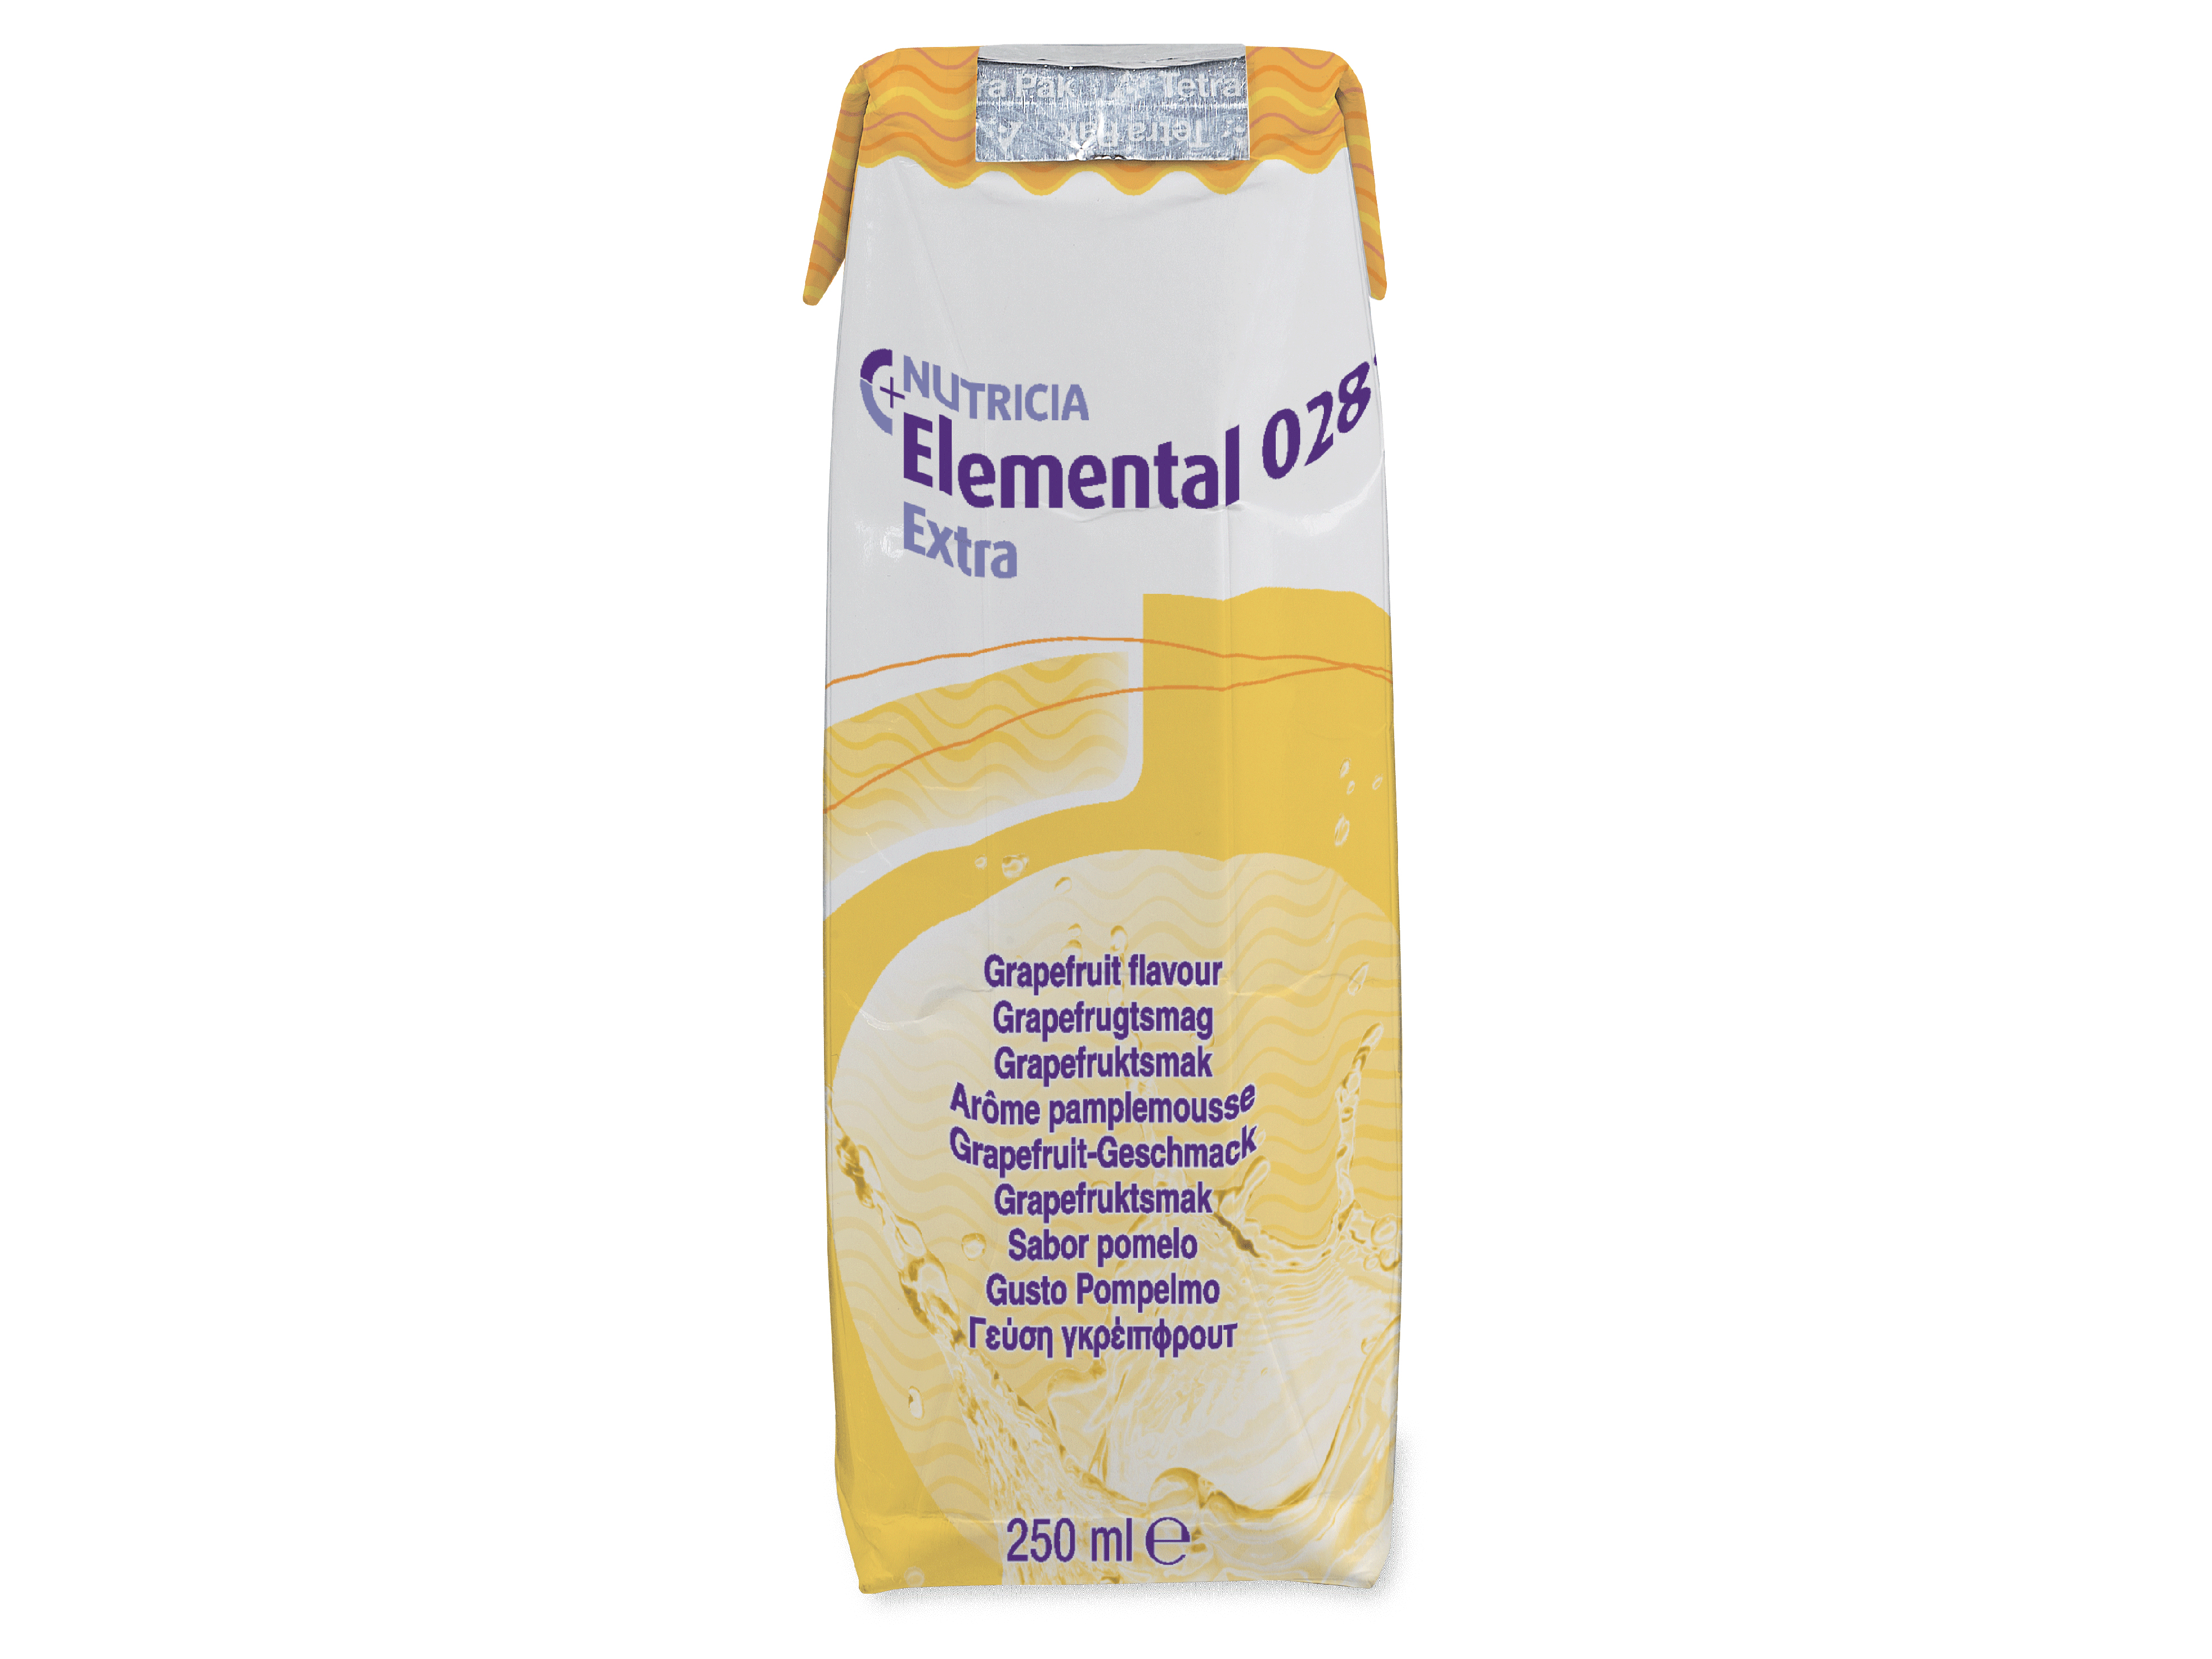 Elemental 028 Extra LQ sykdomsspesifikk næringsdrikk, Grapefrukt, 18x250 ml